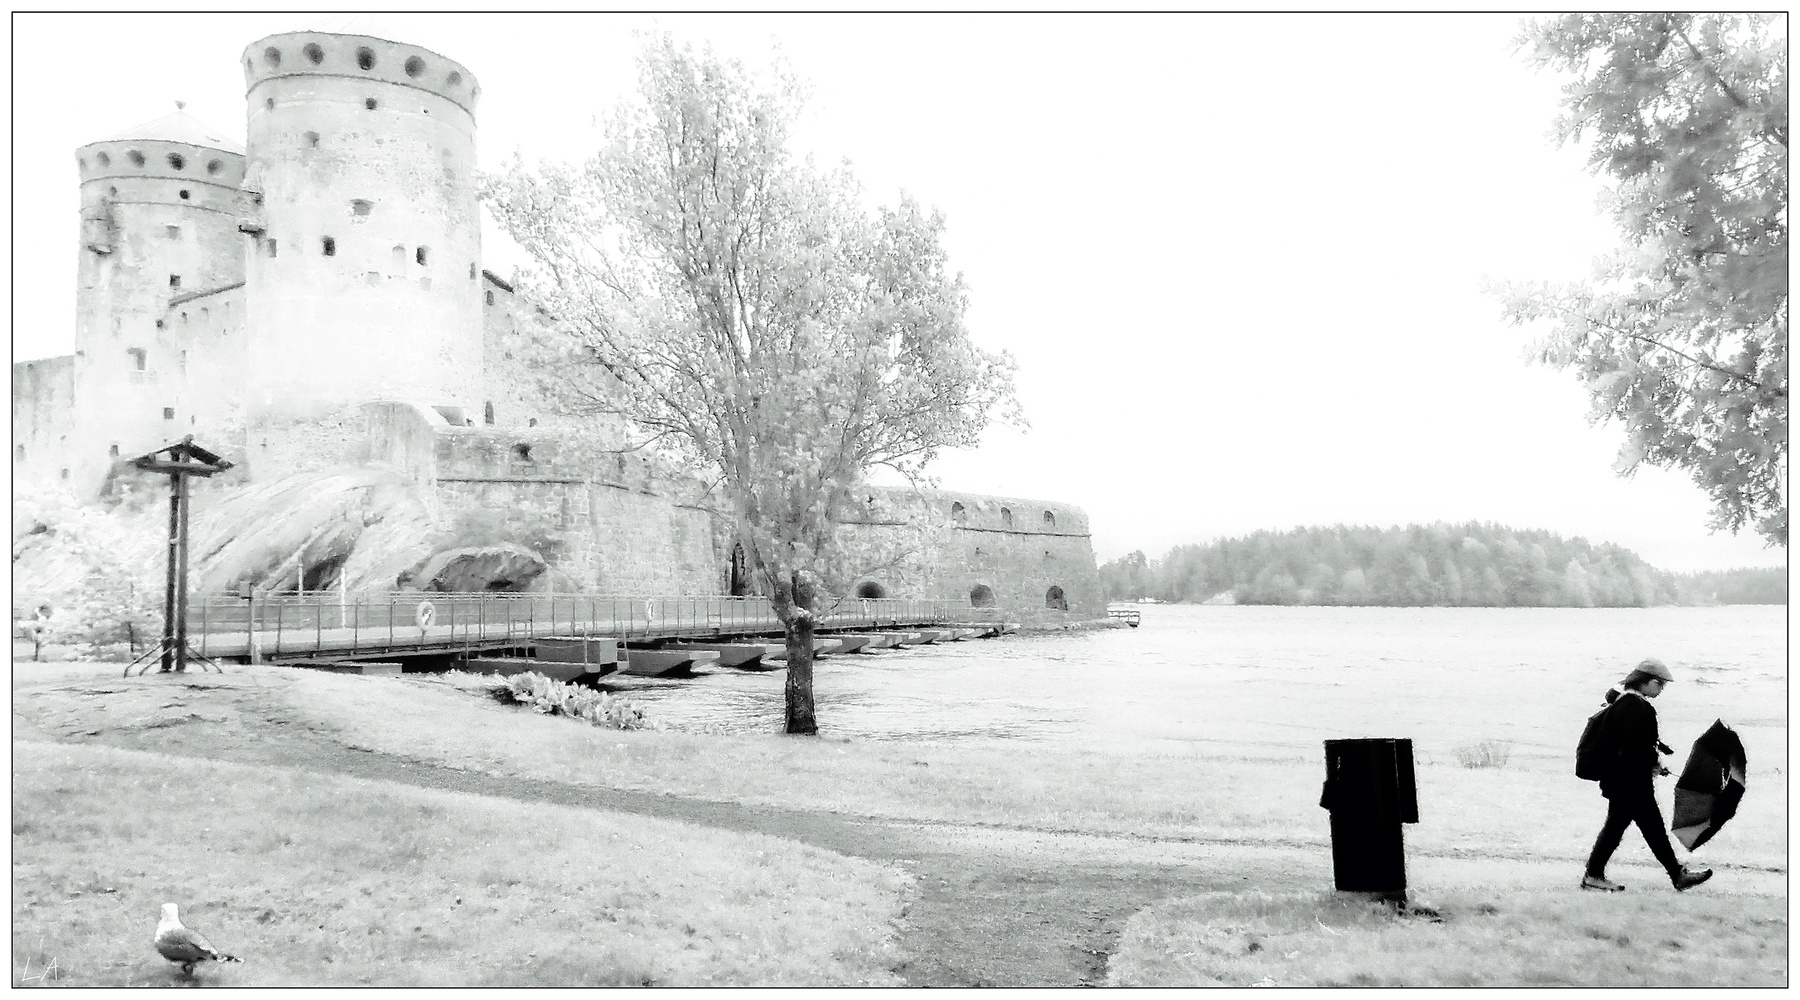 *Дождь позади* фотография путешествие Финляндия лето крепость жанр Фото.Сайт Светлана Мамакина Lihgra Adventure